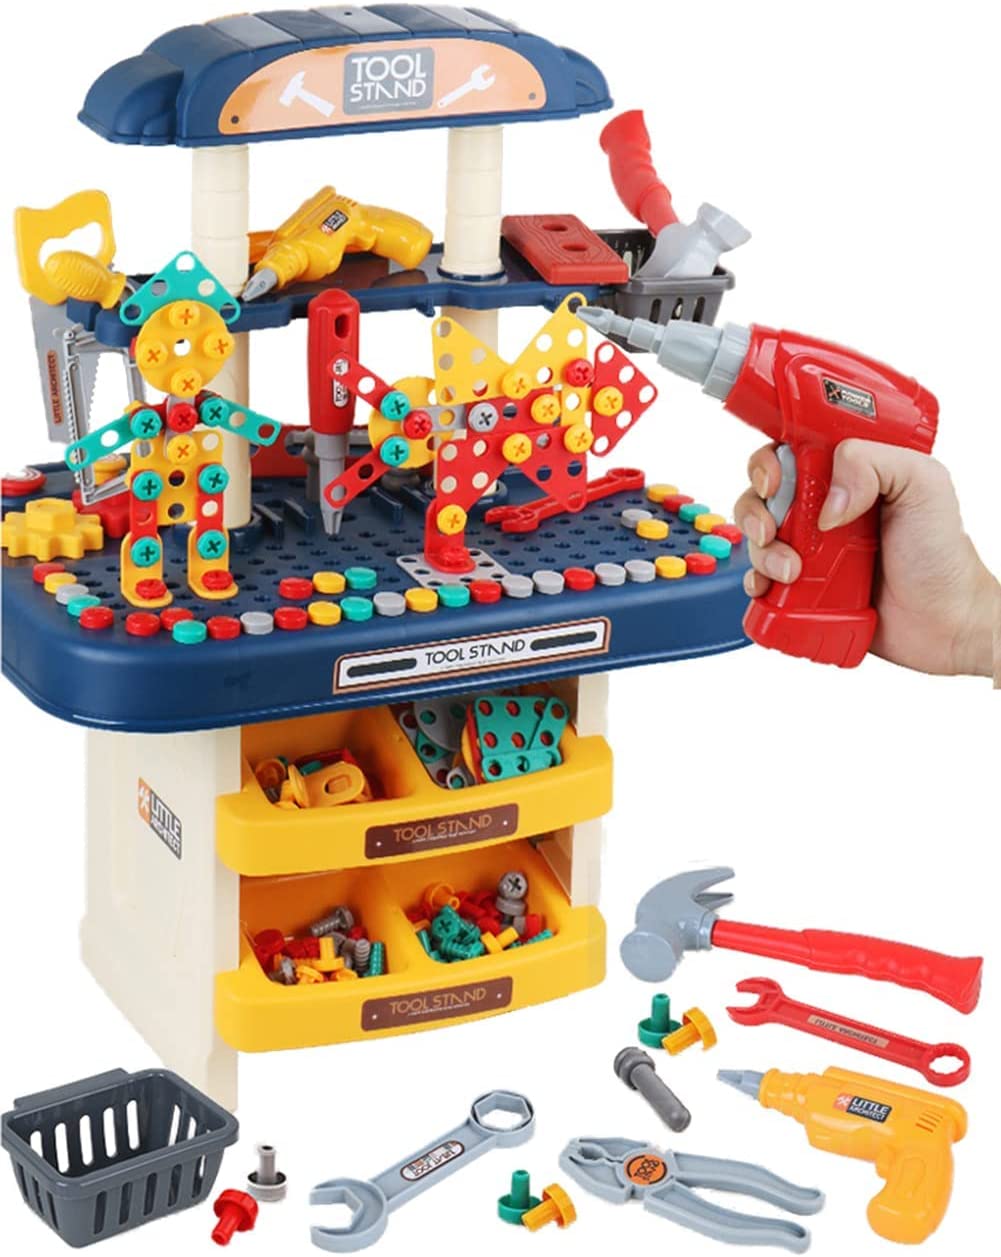 大工さん 大工さんおもちゃ 工具セット 男の子 大工さんごっこ 組み立て ミニ作業台 おままごと ごっこ遊び 子供おもちゃ クリスマス プレゼント